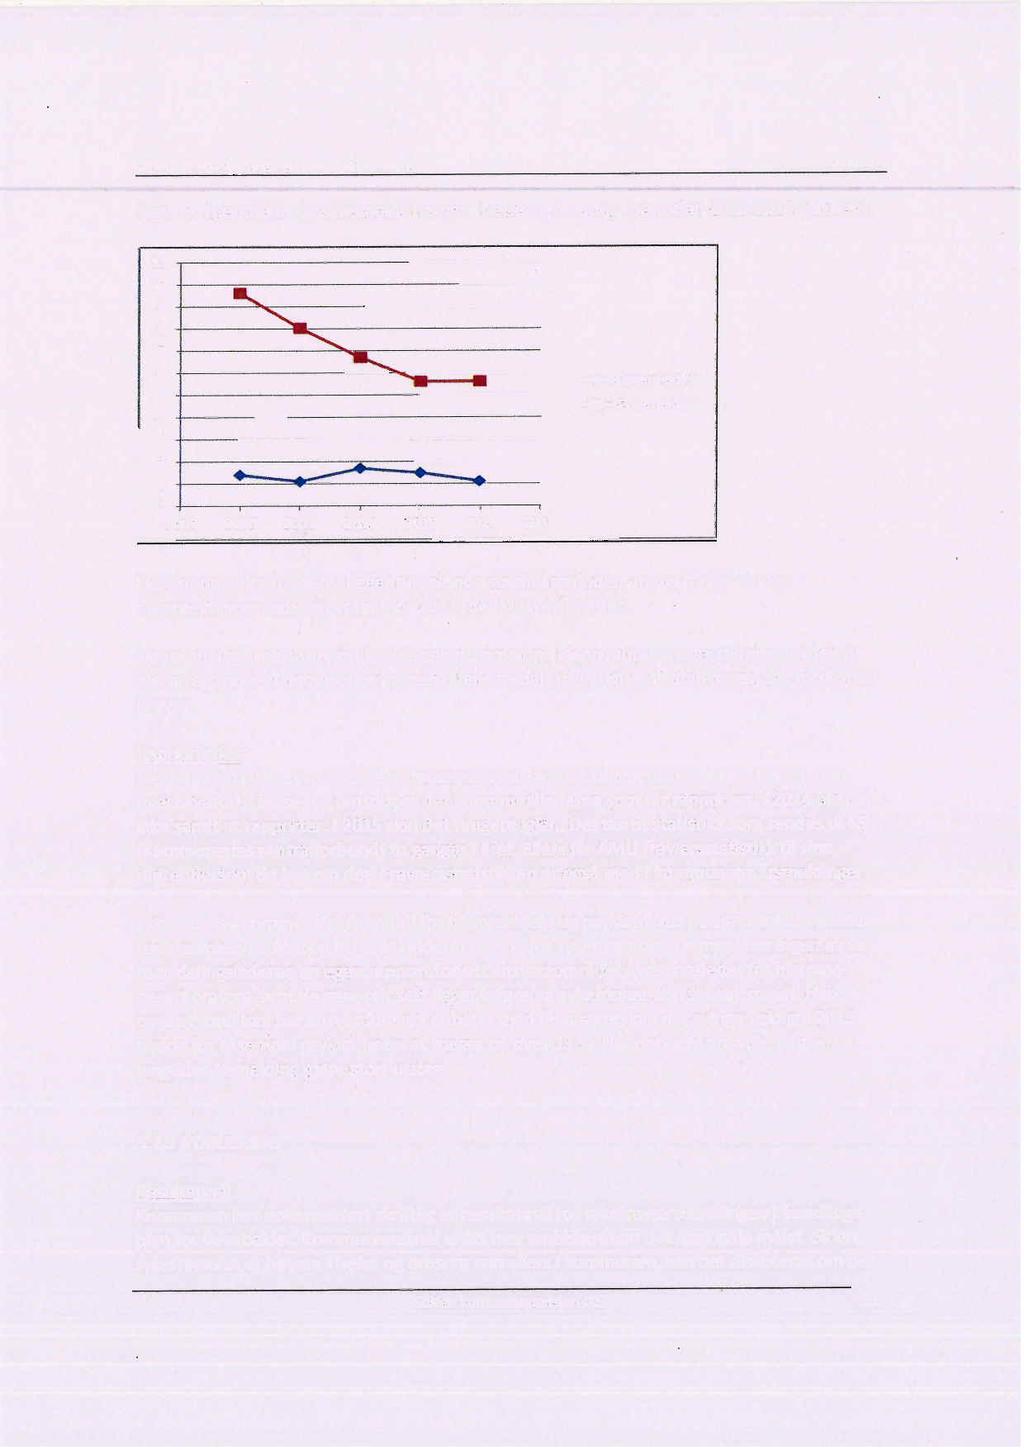 Sykefraværsoppfølging i helse og omsorg Beiarn kommune figur 3: Egenmeldt og svkemeldt fravær i helse og omsorg i perioden 2010-2014 (prosent) 11 io 9 8 7 6 5 4 3 2 1 o 2009.....-. ~ 2010 2011 2012 20n 2.